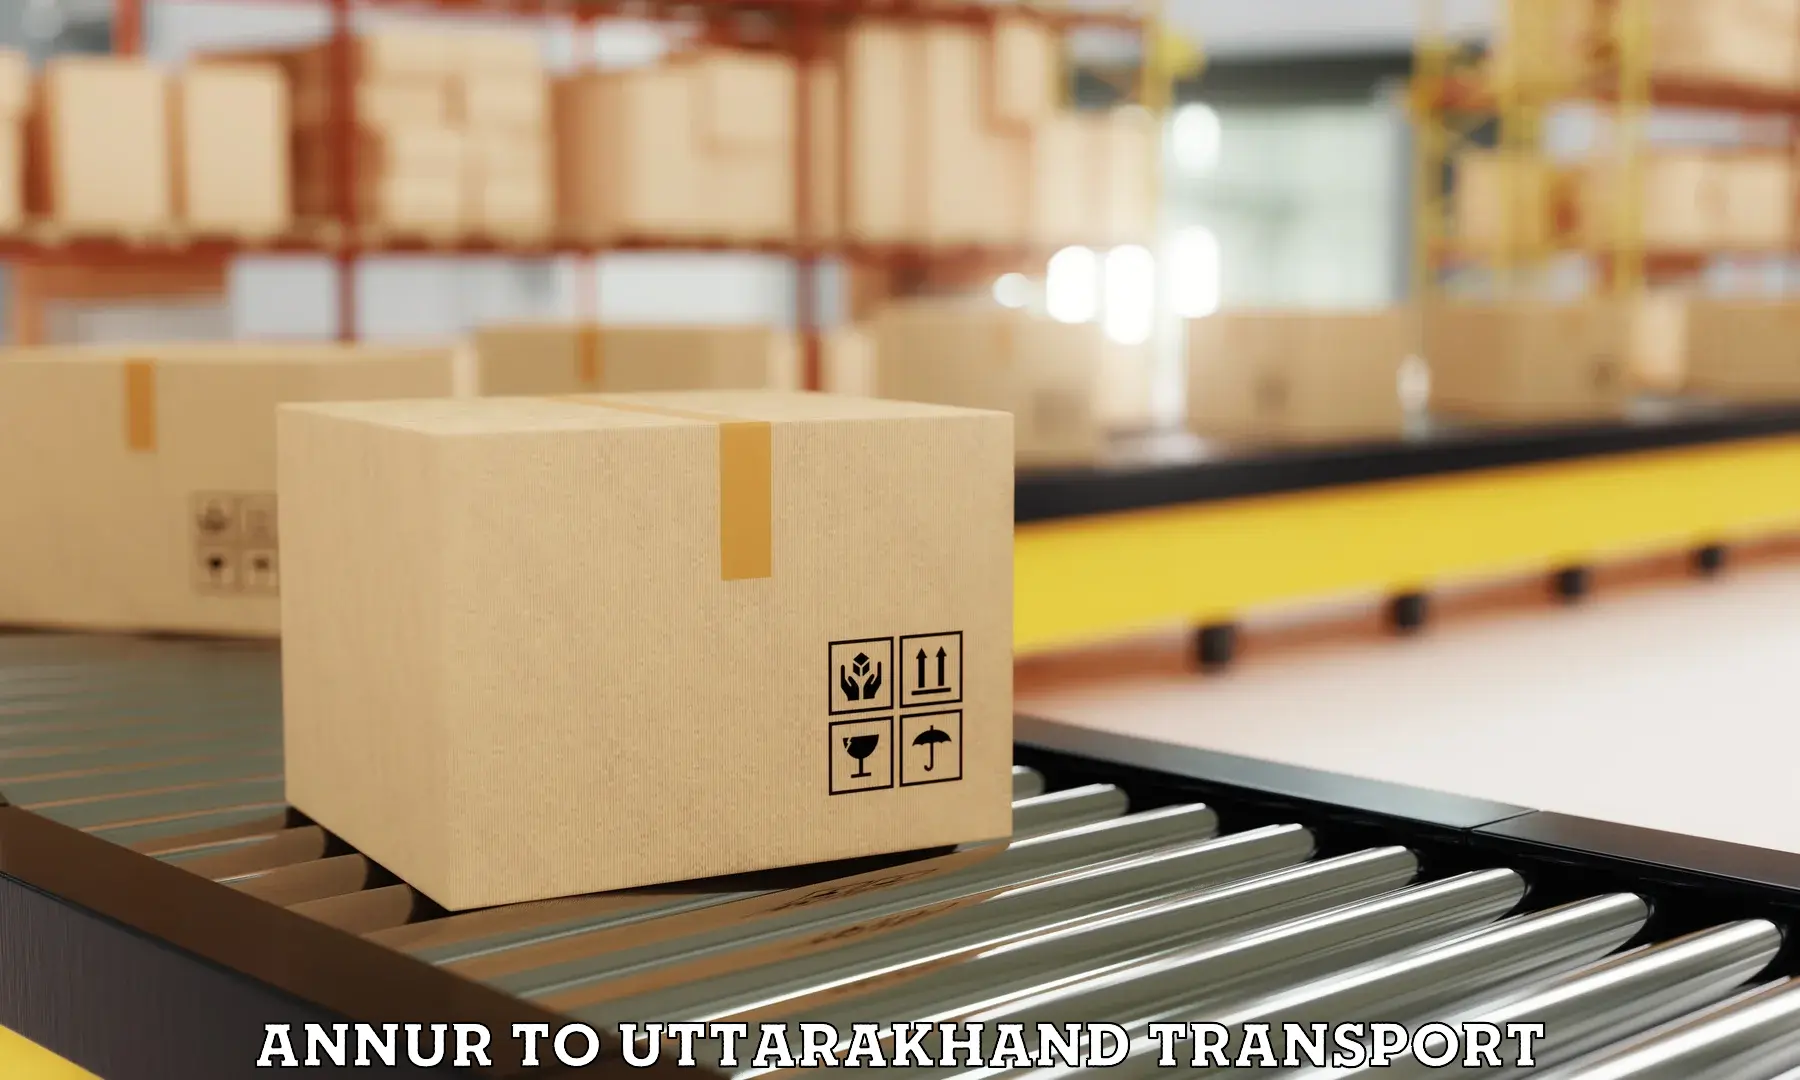 Cargo train transport services Annur to Uttarakhand